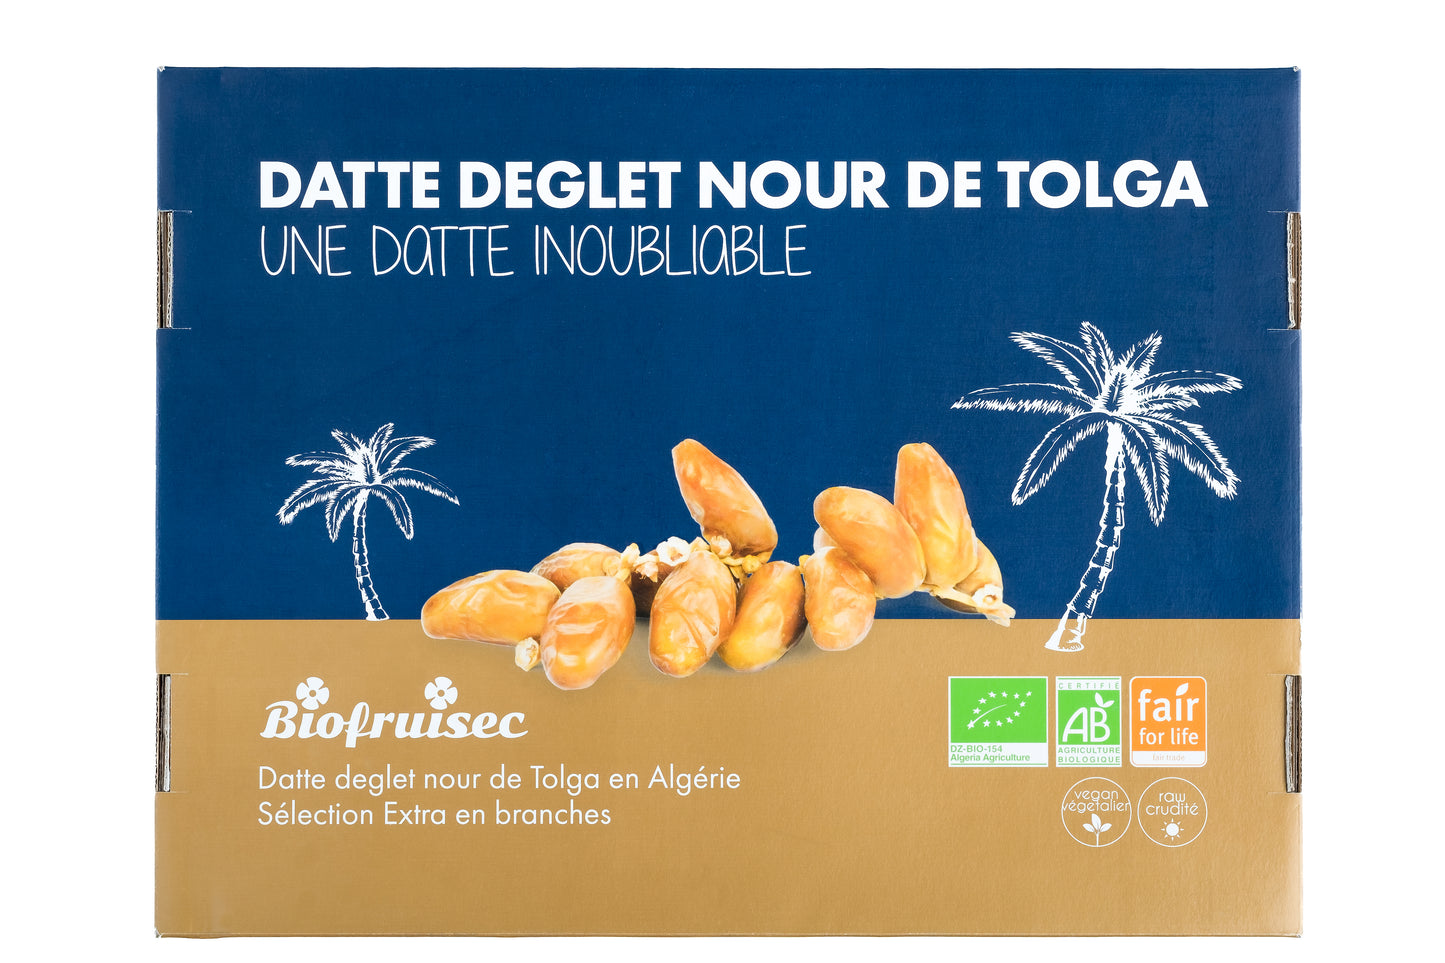 Datte Deglet Nour Sélection Extra en branches bio et équitable de Tolga (Algérie) - Pack Éco